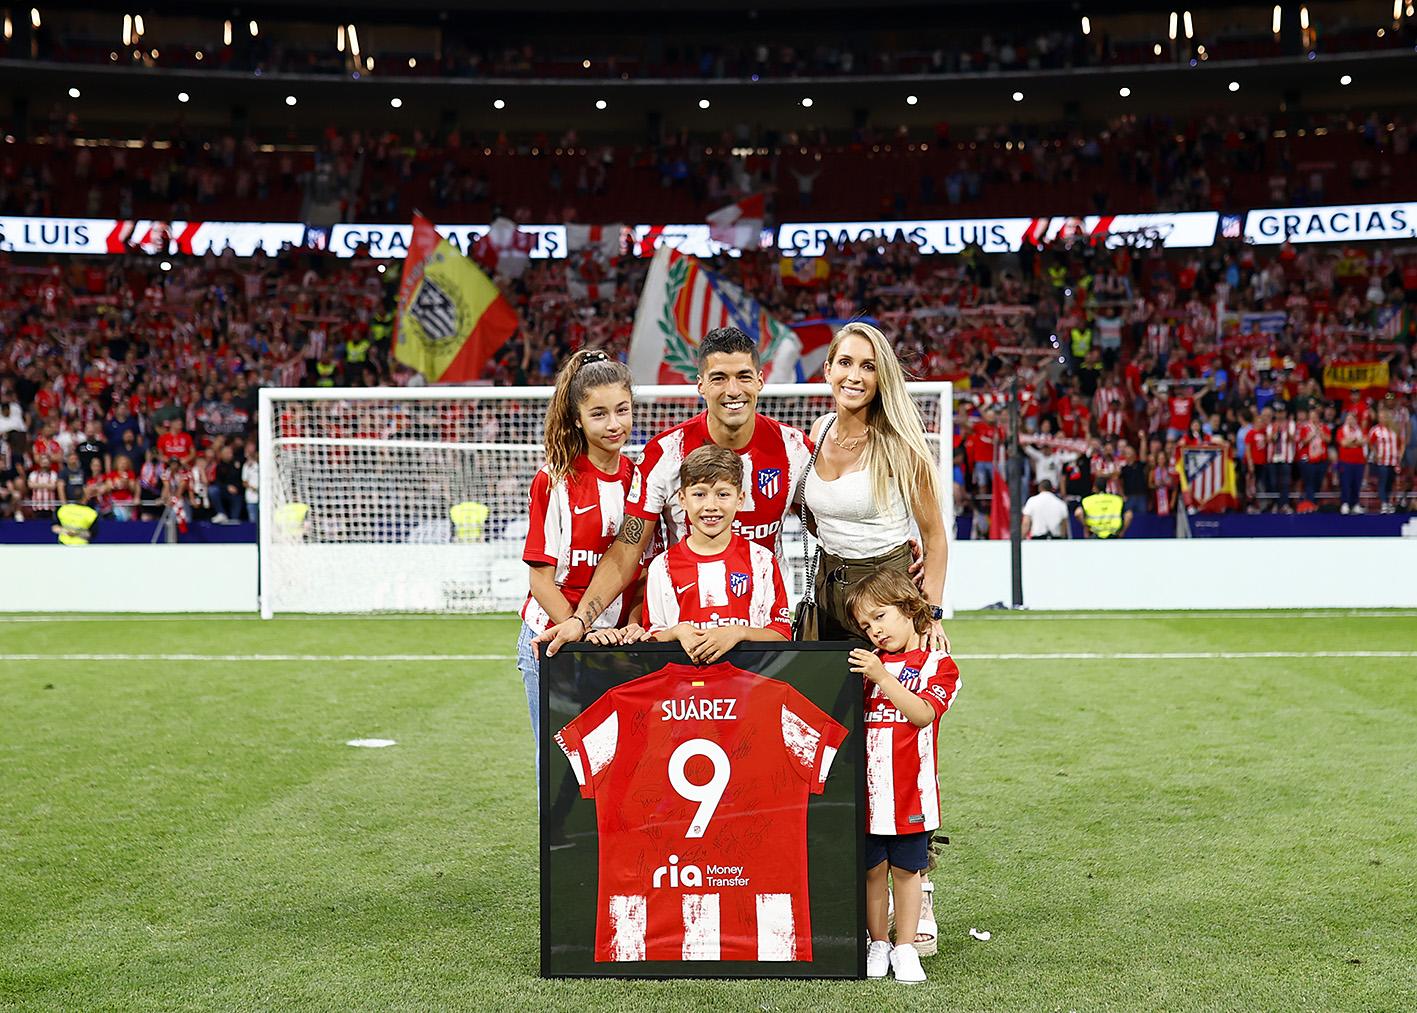 Pasillo y lágrimas en el Atlético: así fue la dura despedida de Luis Suárez y Héctor Herrera en el Wanda Metropolitano